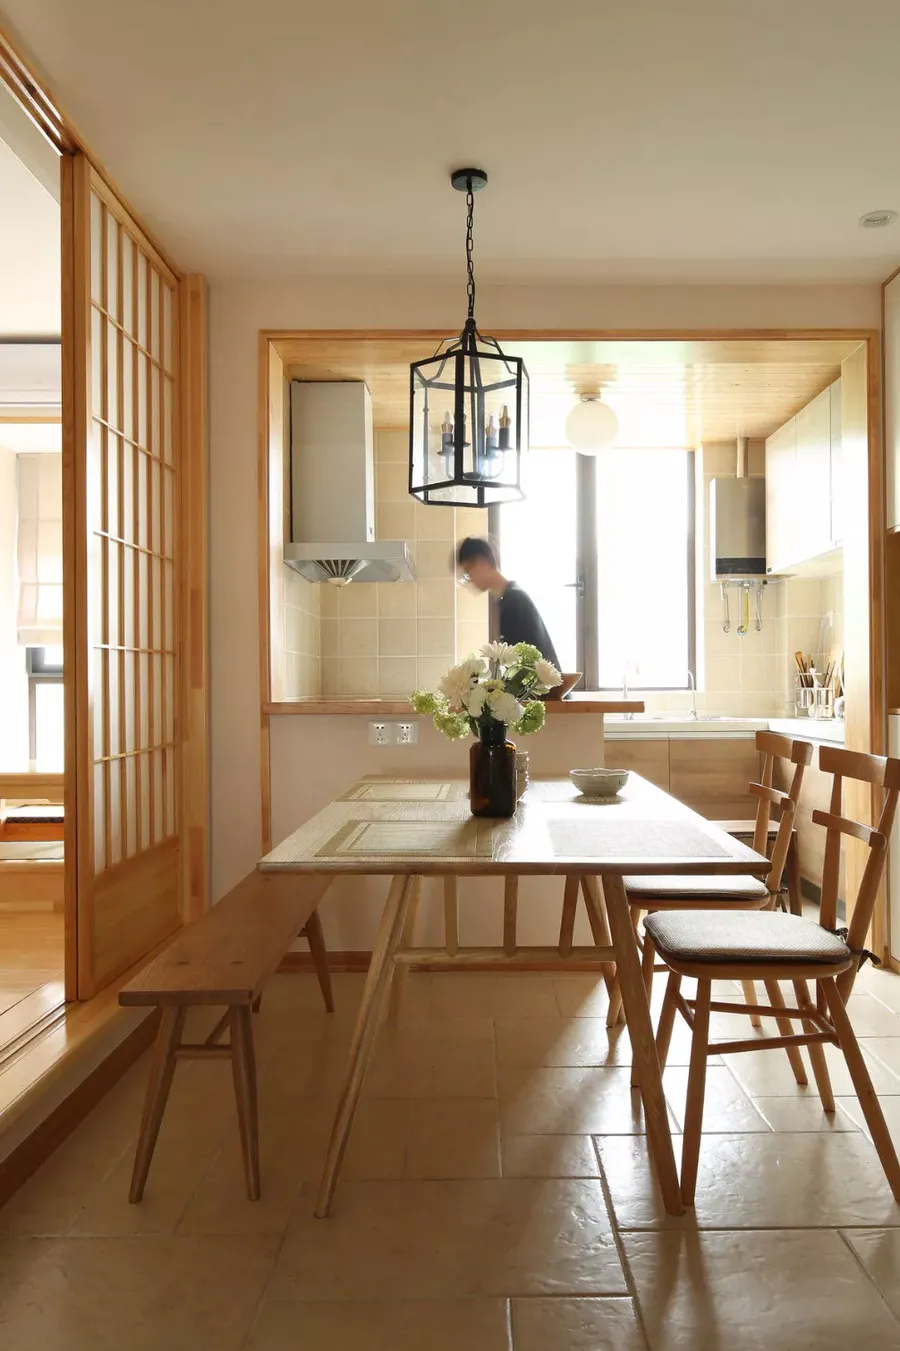 日本人把住宅做到了极致,到底有哪些惊人的细节?